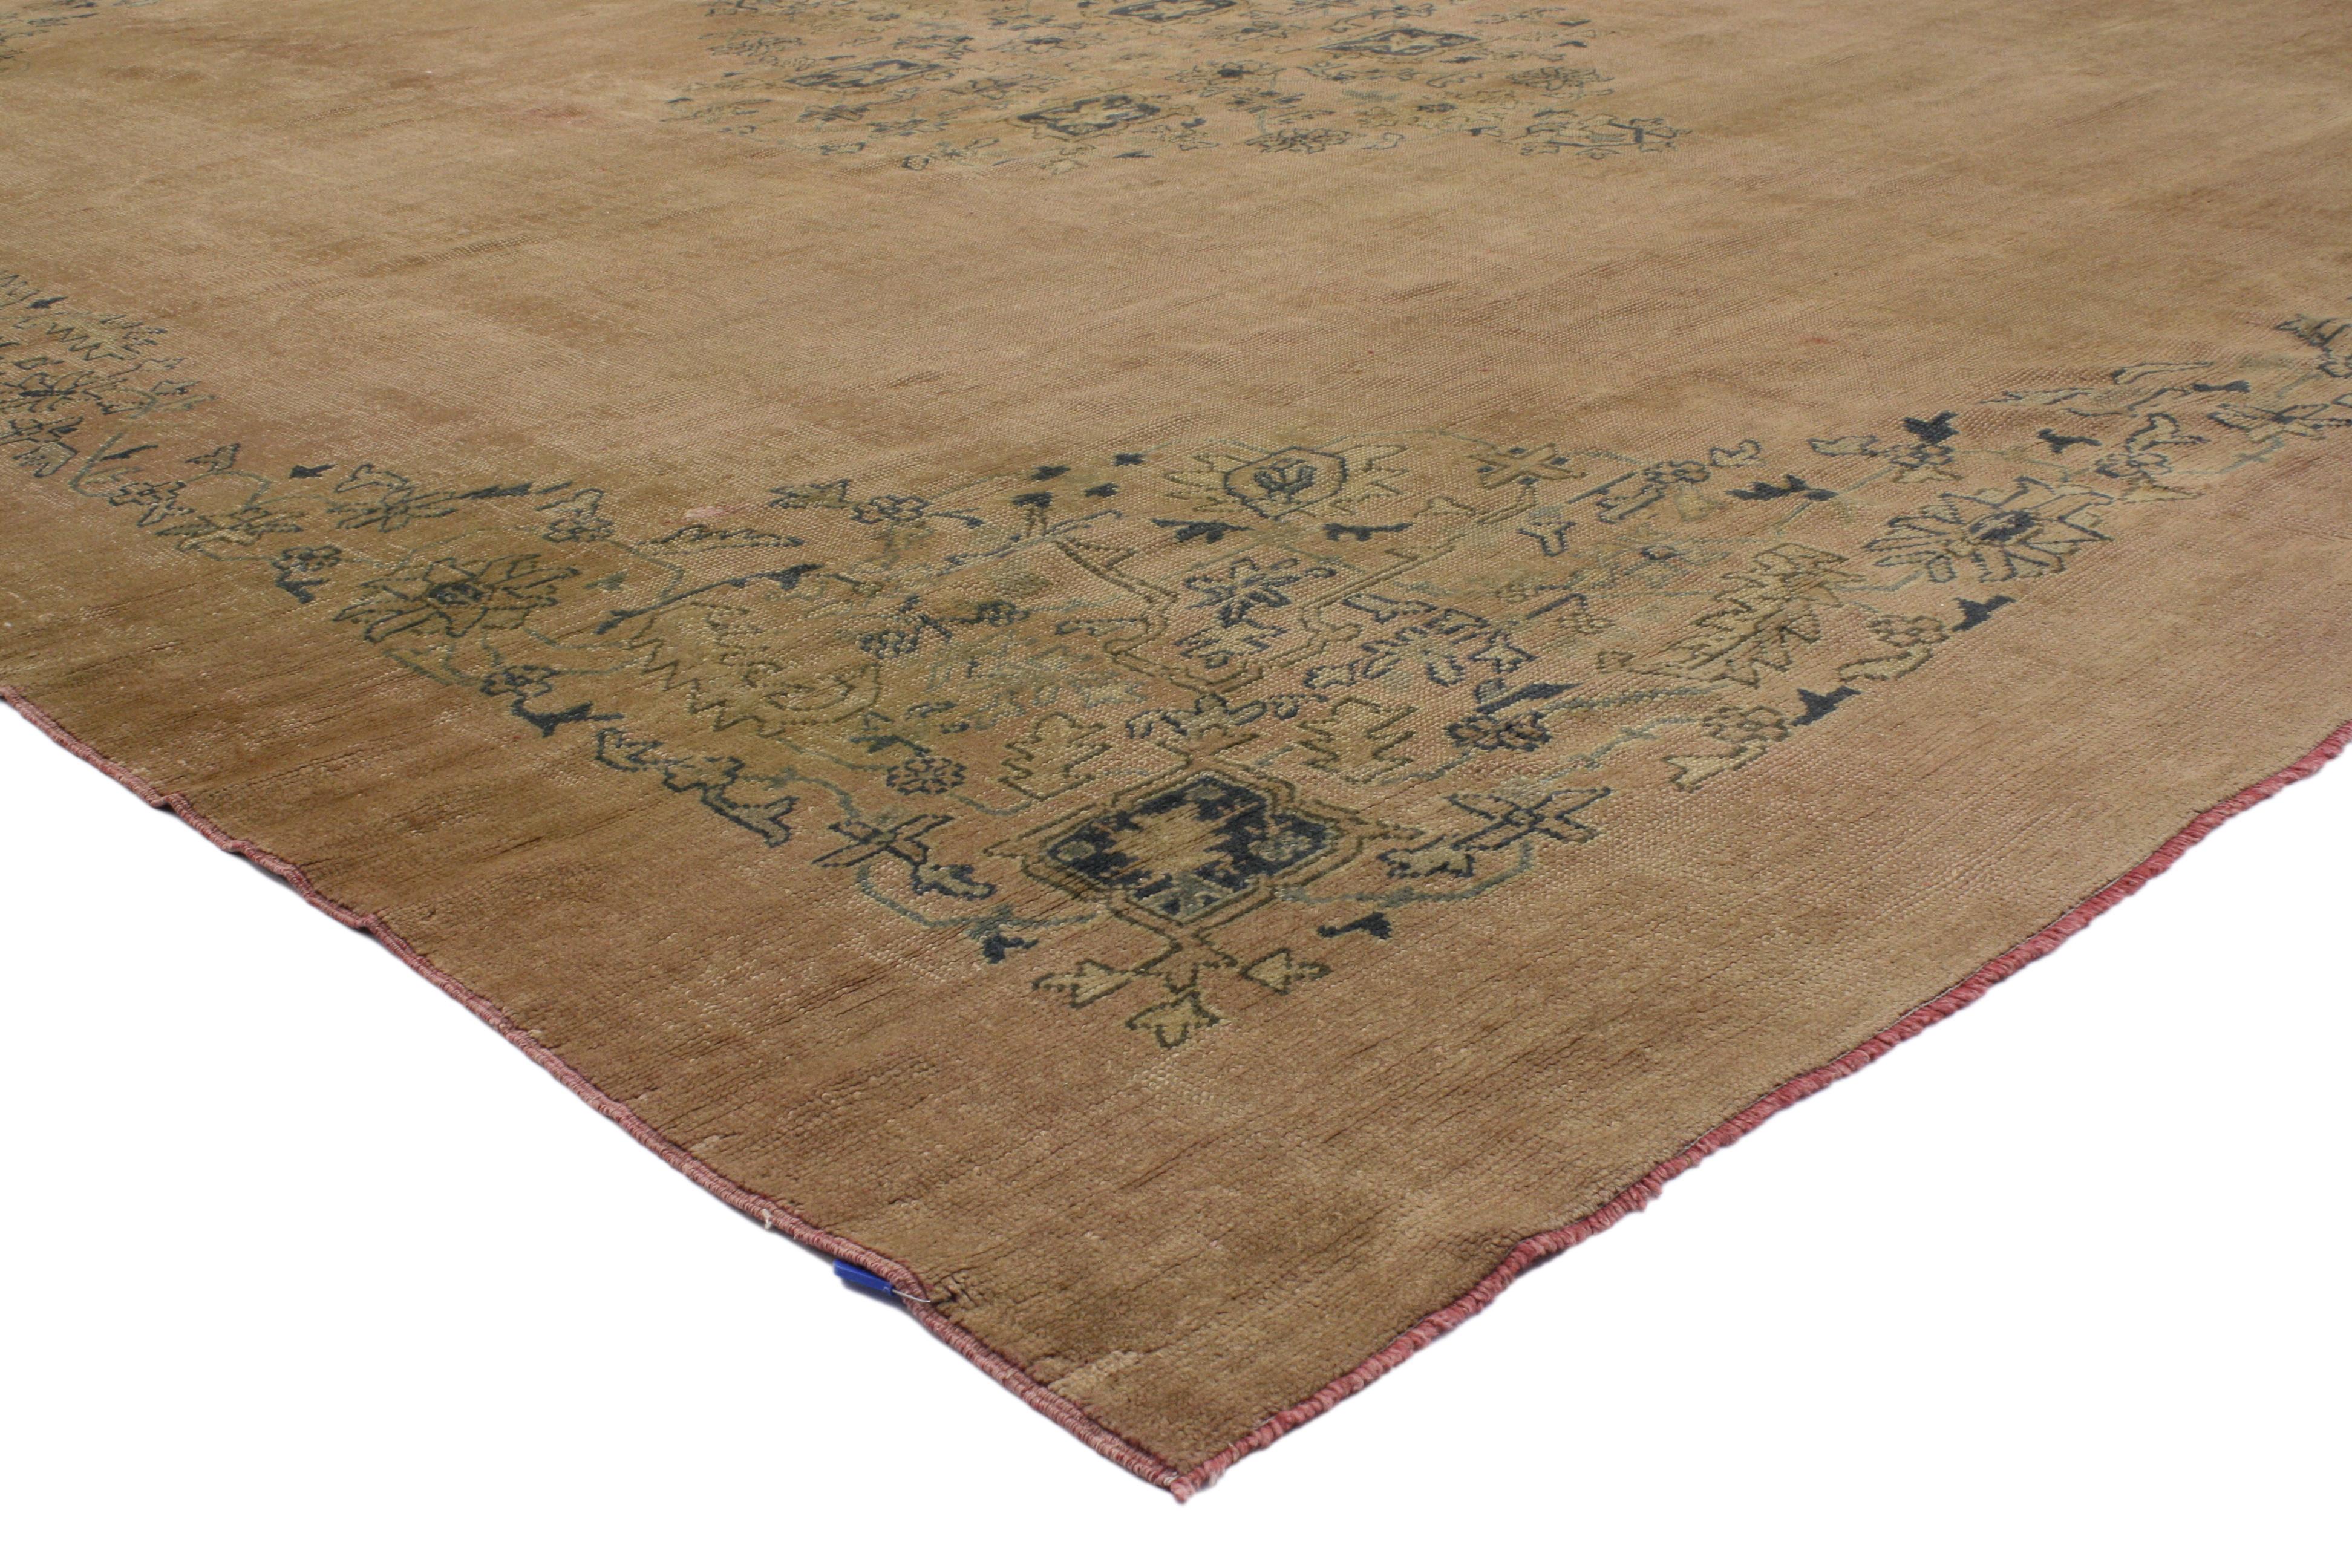 50214 Antiker türkischer Oushak-Teppich im rustikal-romantischen georgianischen Stil. Eine schöne Kombination aus rustikalen Rosatönen und sanften Blautönen in diesem handgeknüpften antiken türkischen Oushak-Teppich aus Wolle schafft ein zartes und